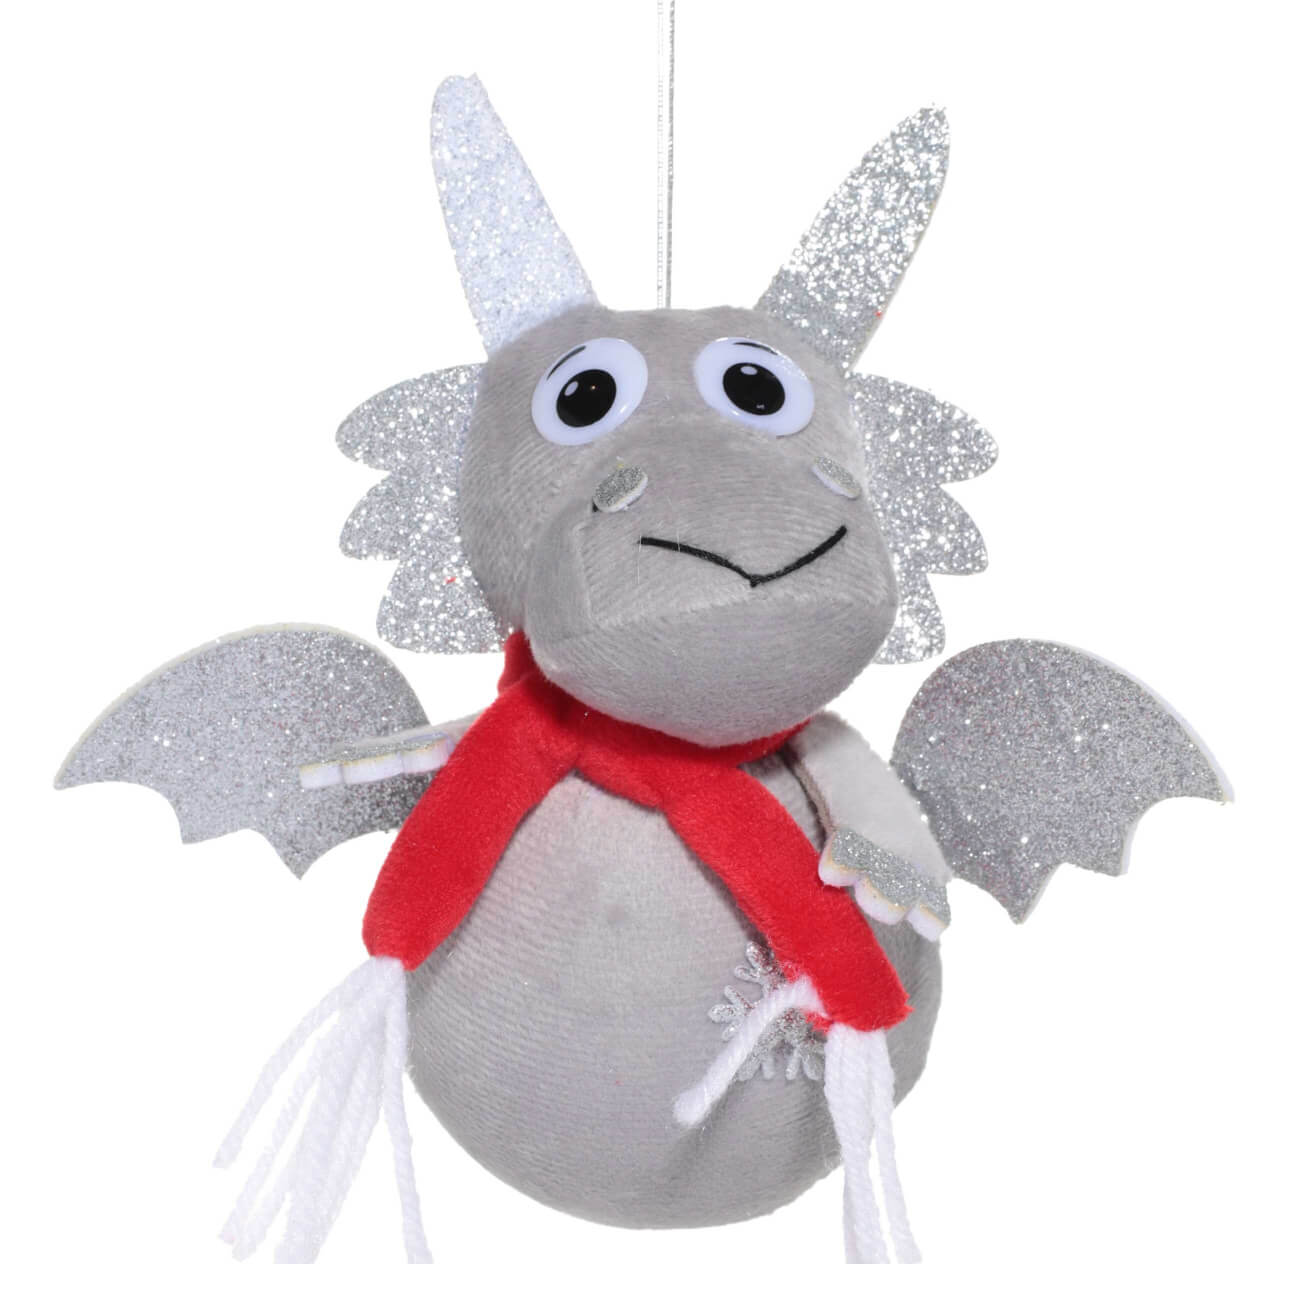 Игрушка елочная, 16 см, полиэстер/пластик, серая/серебристая, Дракон в шарфе, Funny dragon gosi игрушка мышь с хвостом из пера